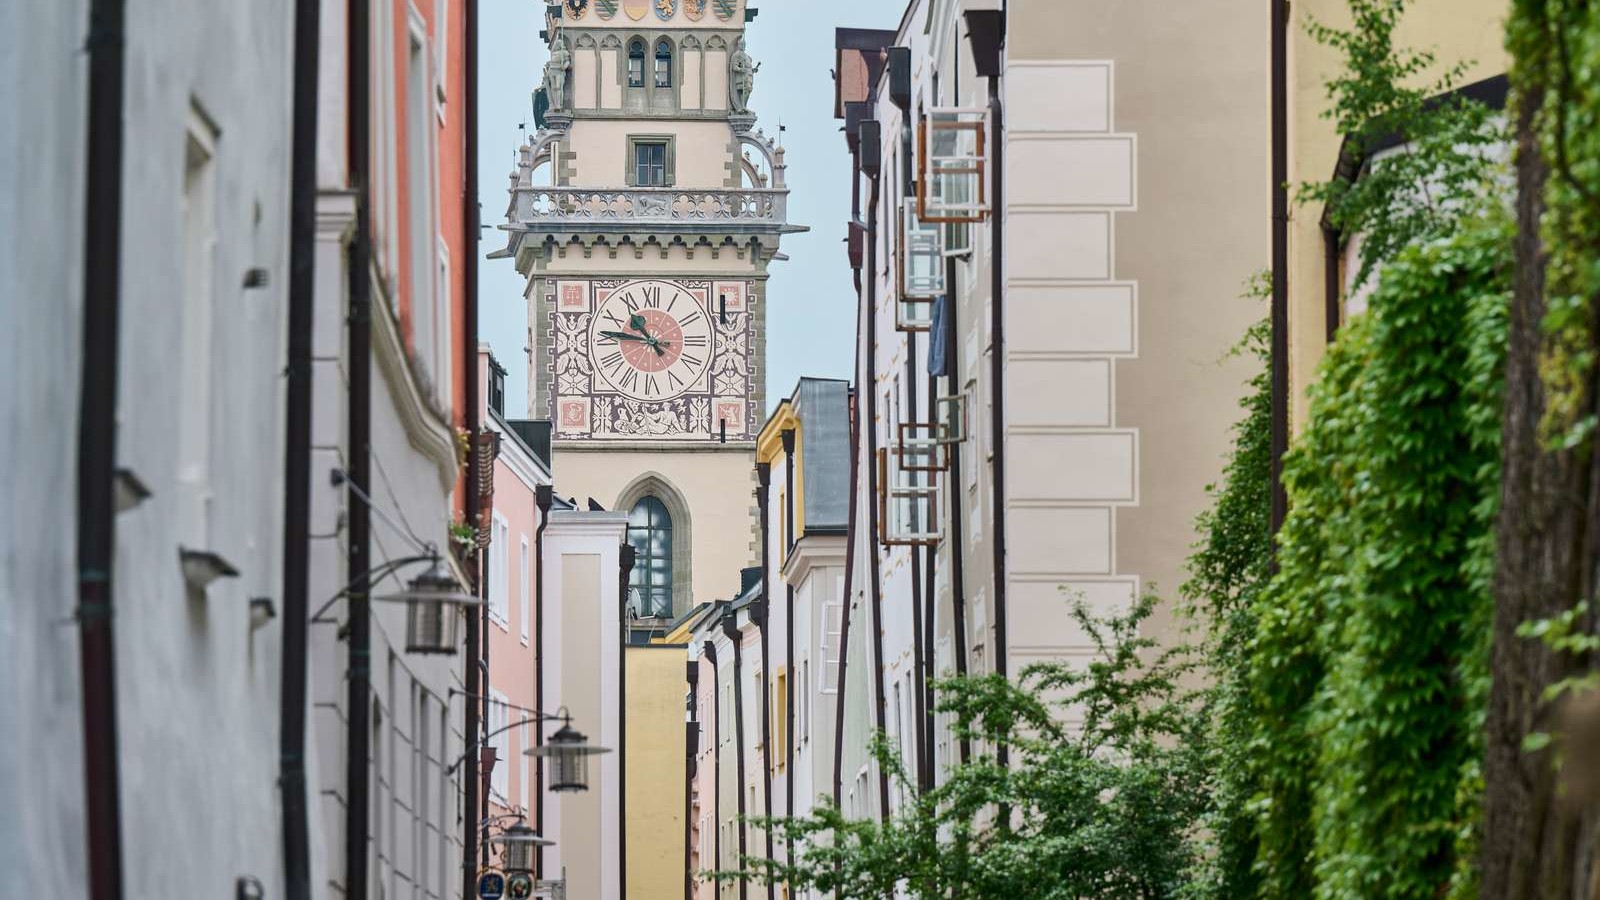 Höllgasse und Rathausturm mit Uhr in der Stadt Passau